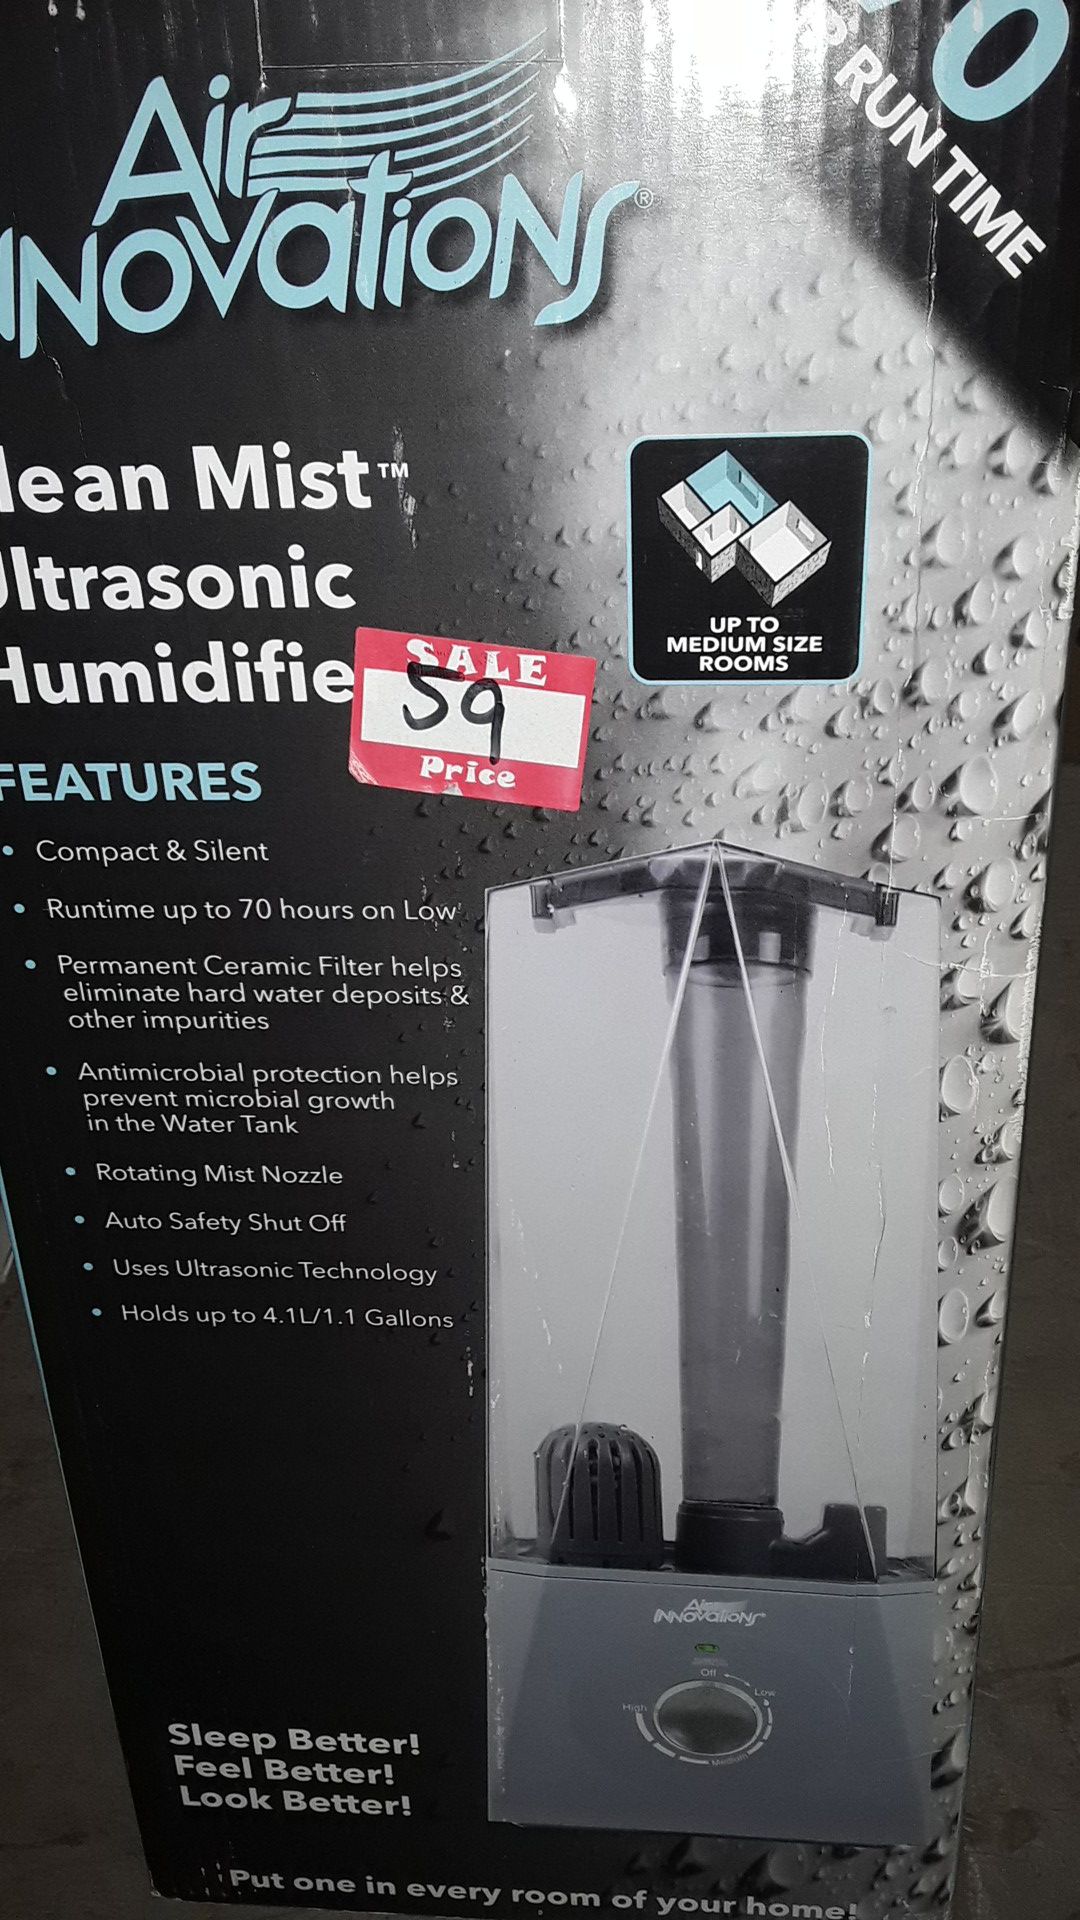 Clean Mist ultrasonic Humidifier